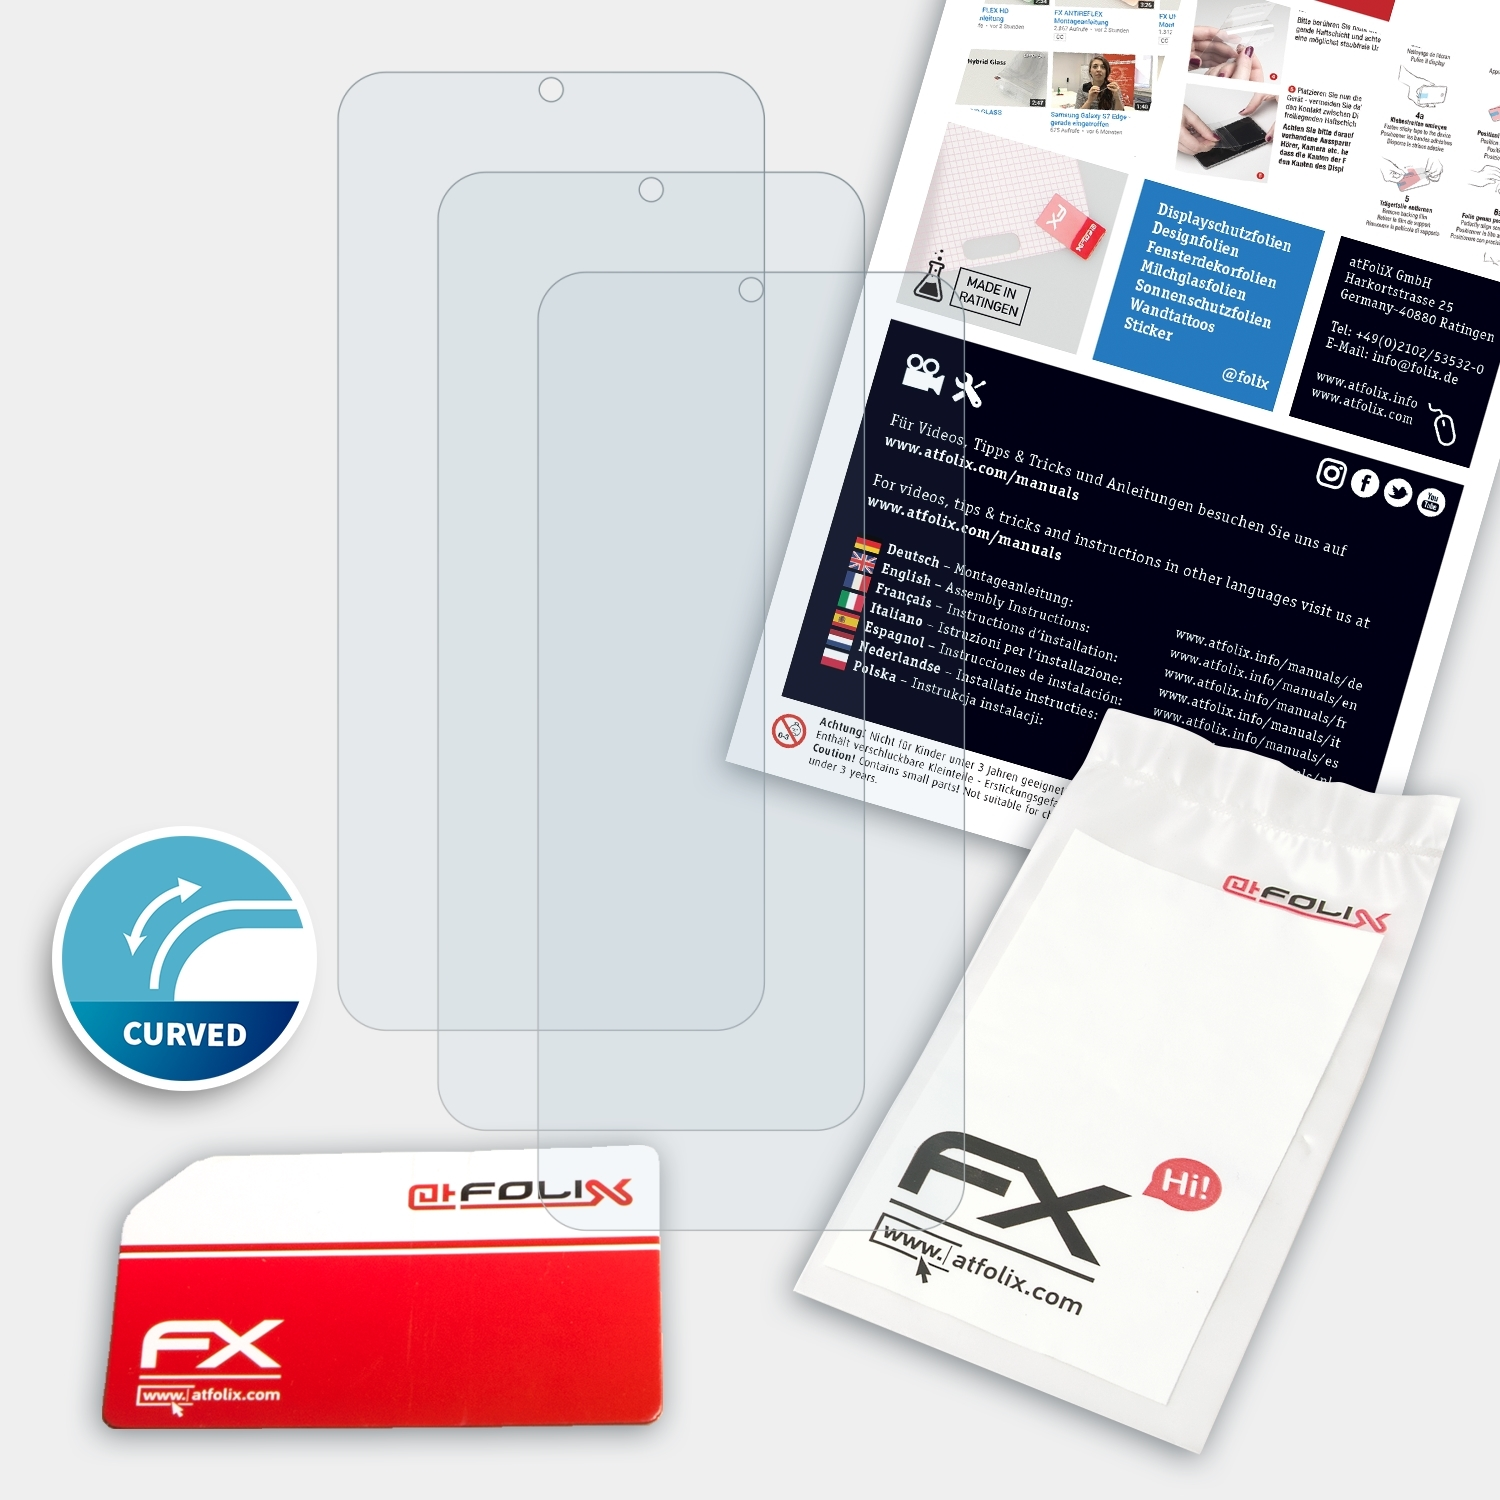 ATFOLIX (2021)) Y21 Vivo FX-ActiFleX 3x Displayschutz(für